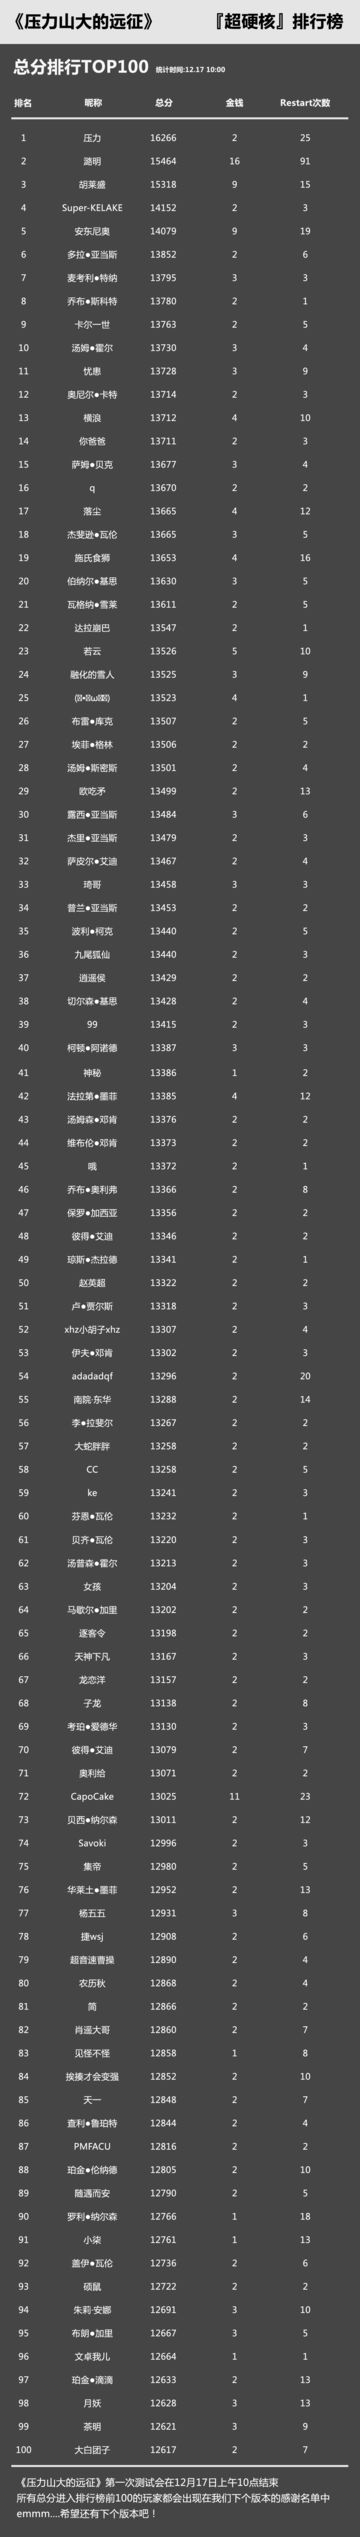 【超硬核排行榜 Top100】首测终榜（截止至12月17日10:00）